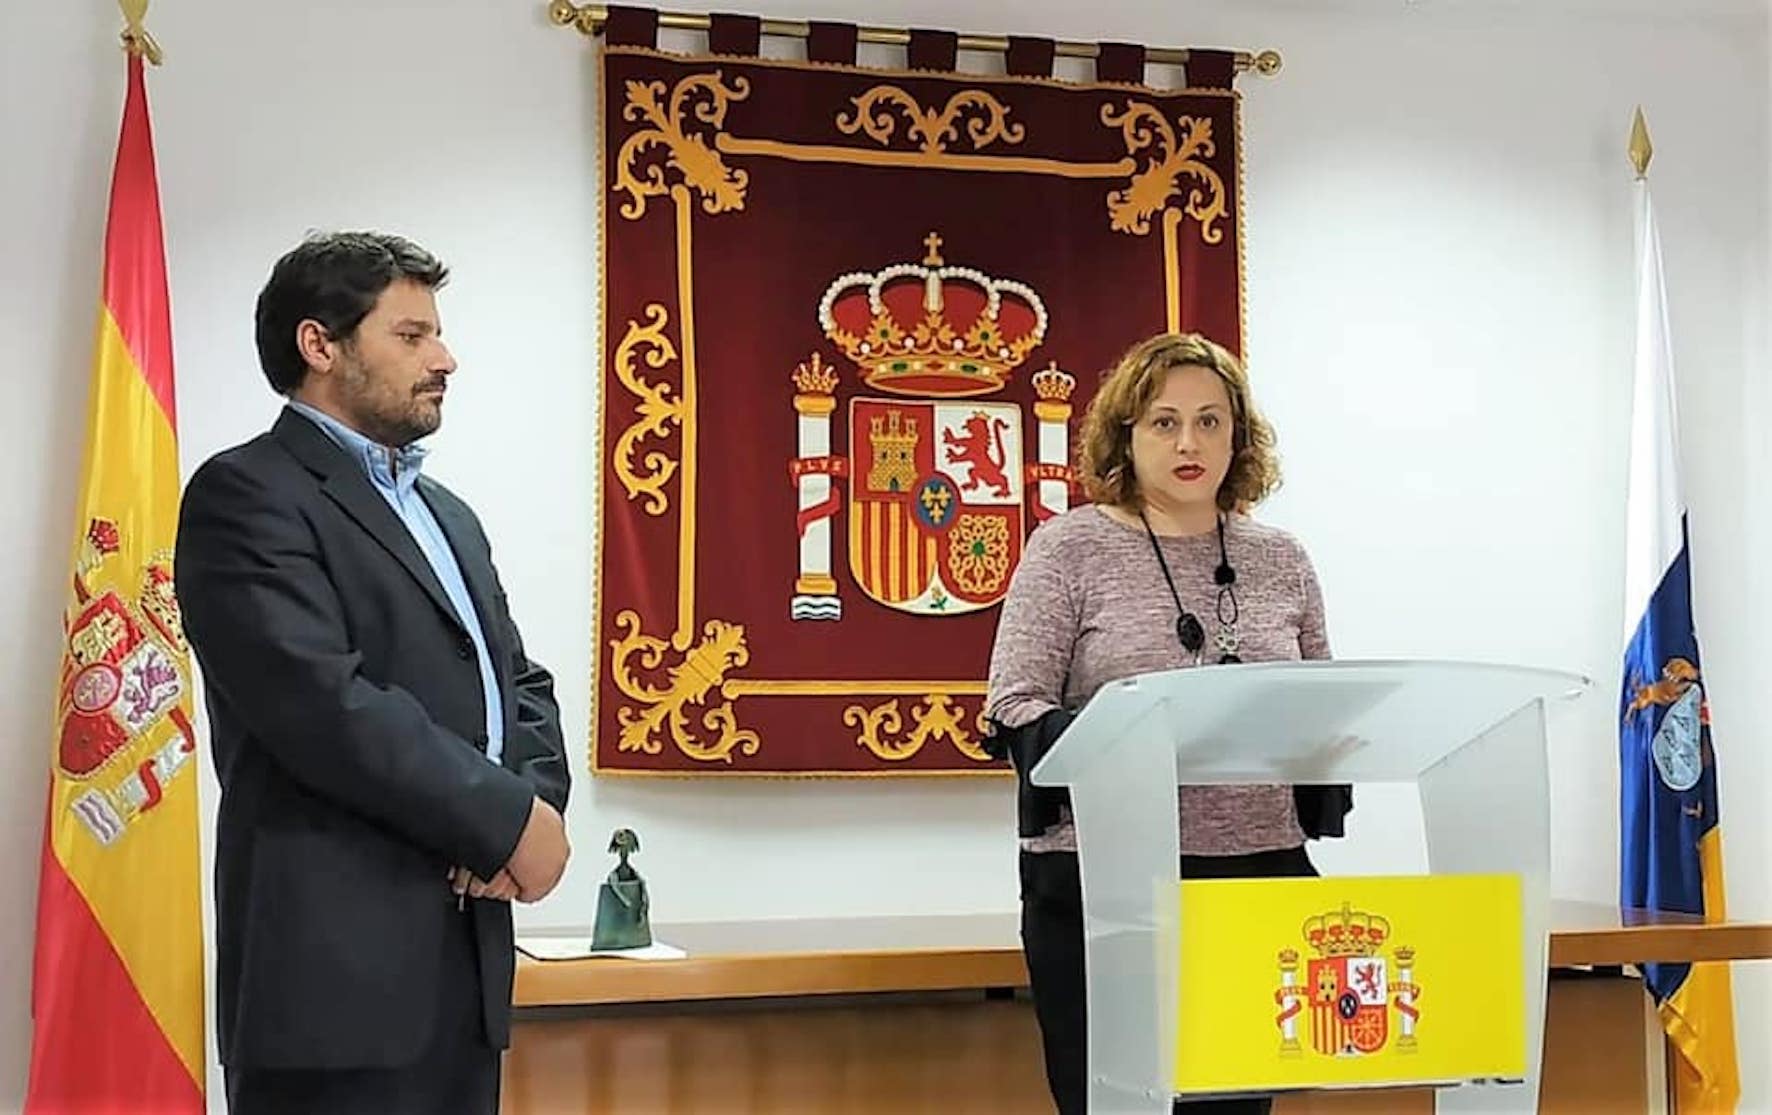 El Gobierno estatal premia a la abogada herreña Dolores Padrón por su labor contra la violencia machista